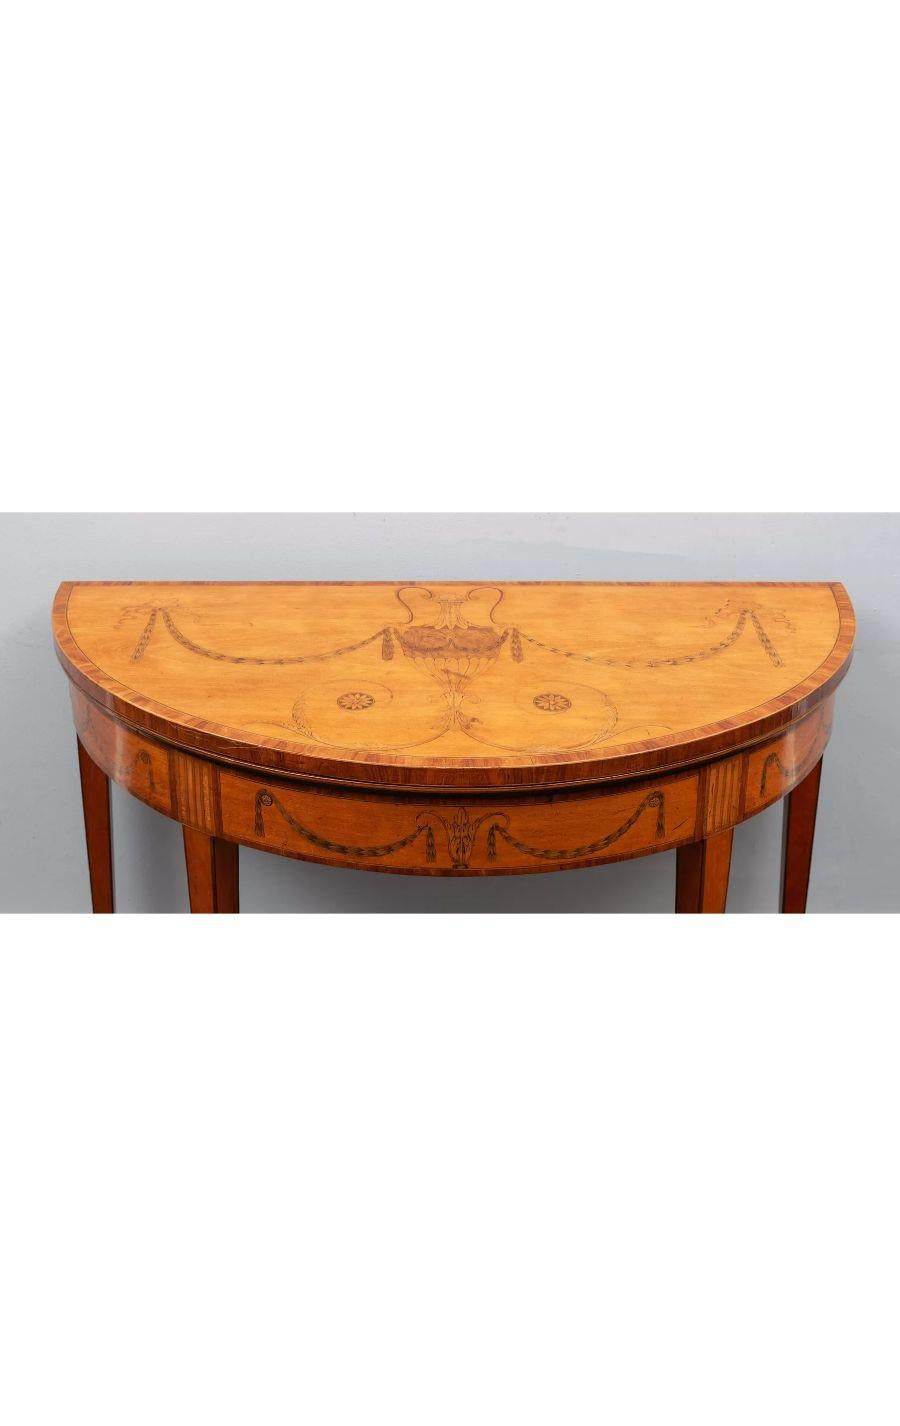 Ein Demi-Lune-Tisch mit Intarsien aus Satinholz nach William Moore, George III.

Neoklassizistischer Stil mit besonders schönen Intarsien und Einlegearbeiten aus exotischen Hölzern.

Die sich verjüngenden Stützen enden in Messingrollen.

CIRCA